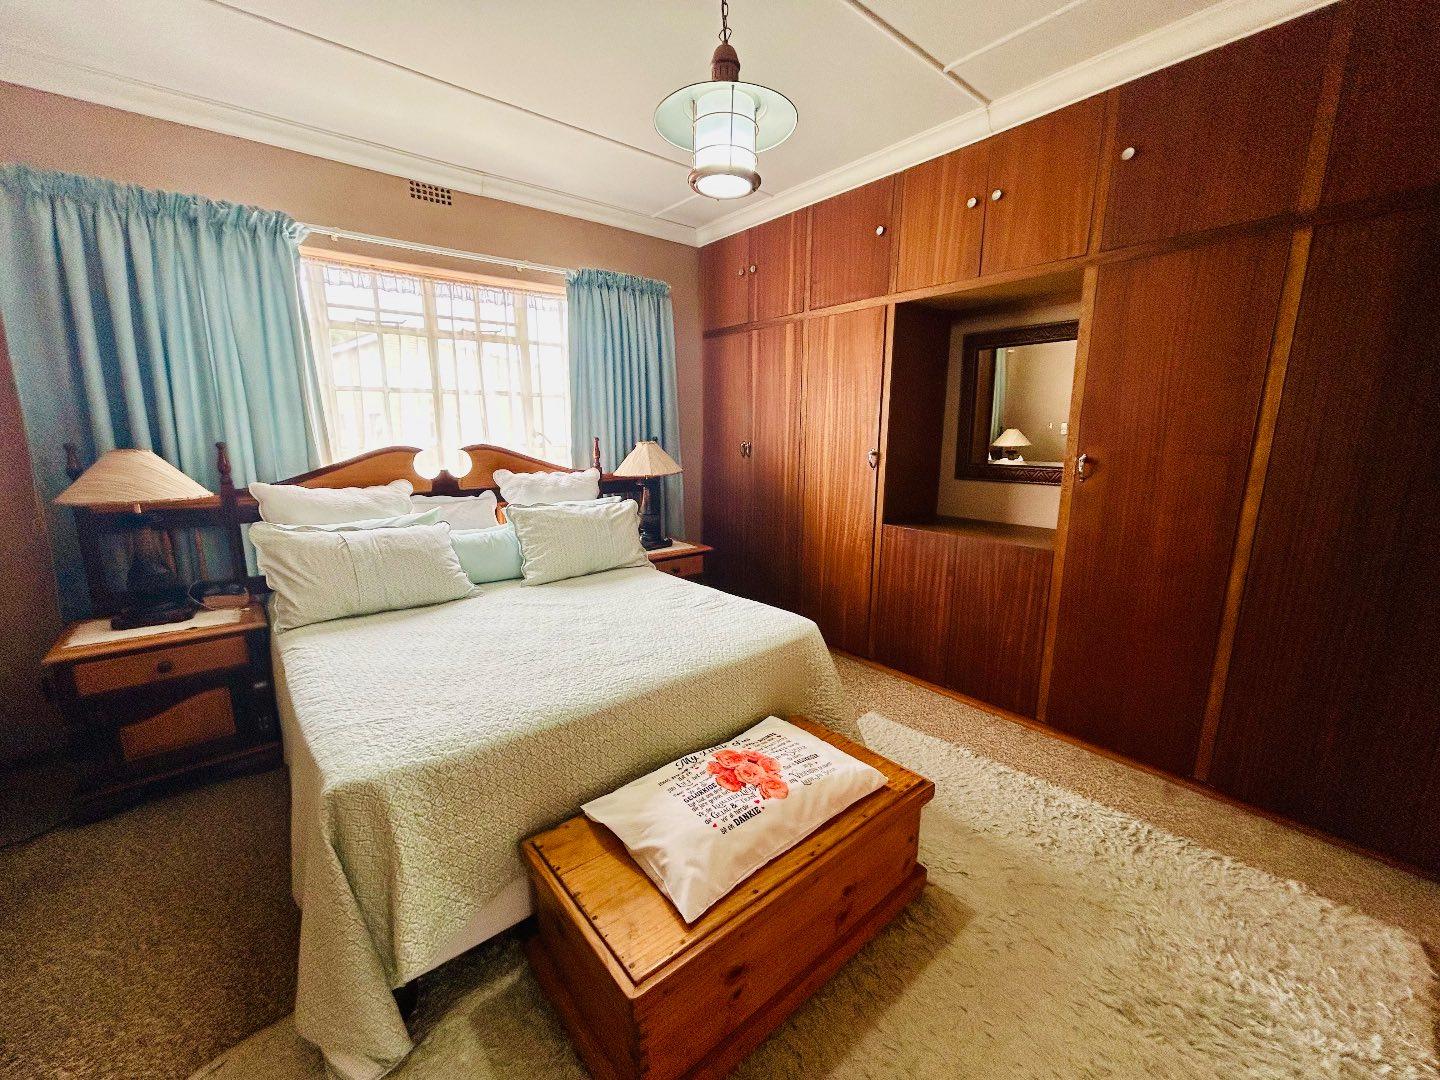 4 Bedroom Property for Sale in Vryheid KwaZulu-Natal